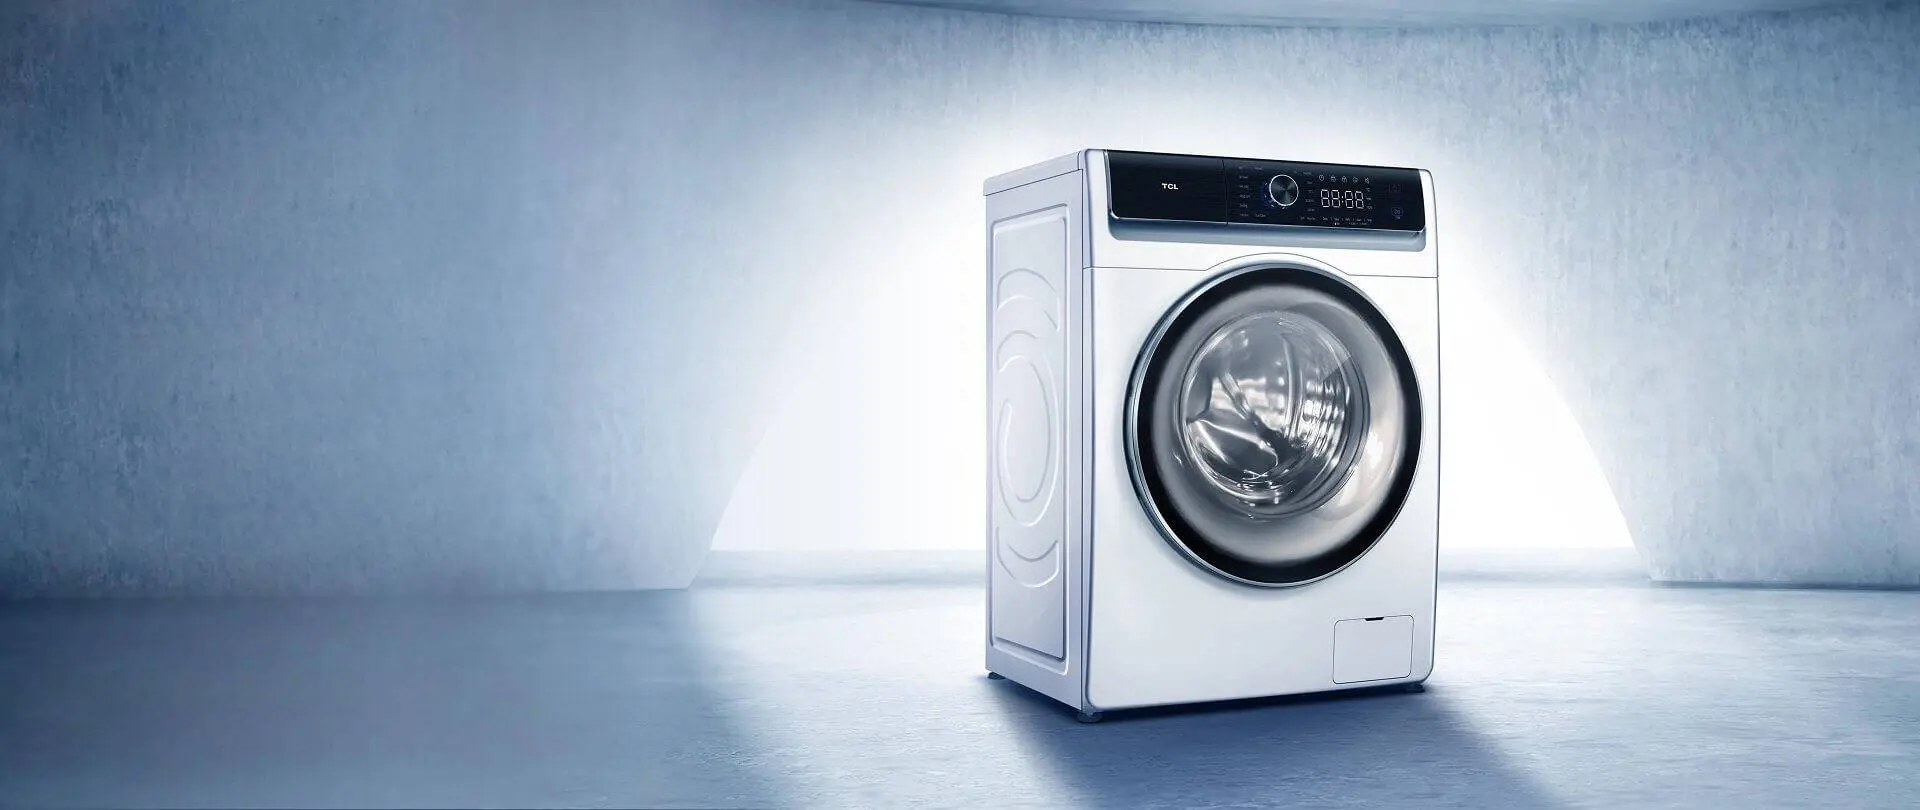 ase pueden lavar en lavarropas las almoadas inteligentes - Cómo lavar almohadas de fibra sintetica